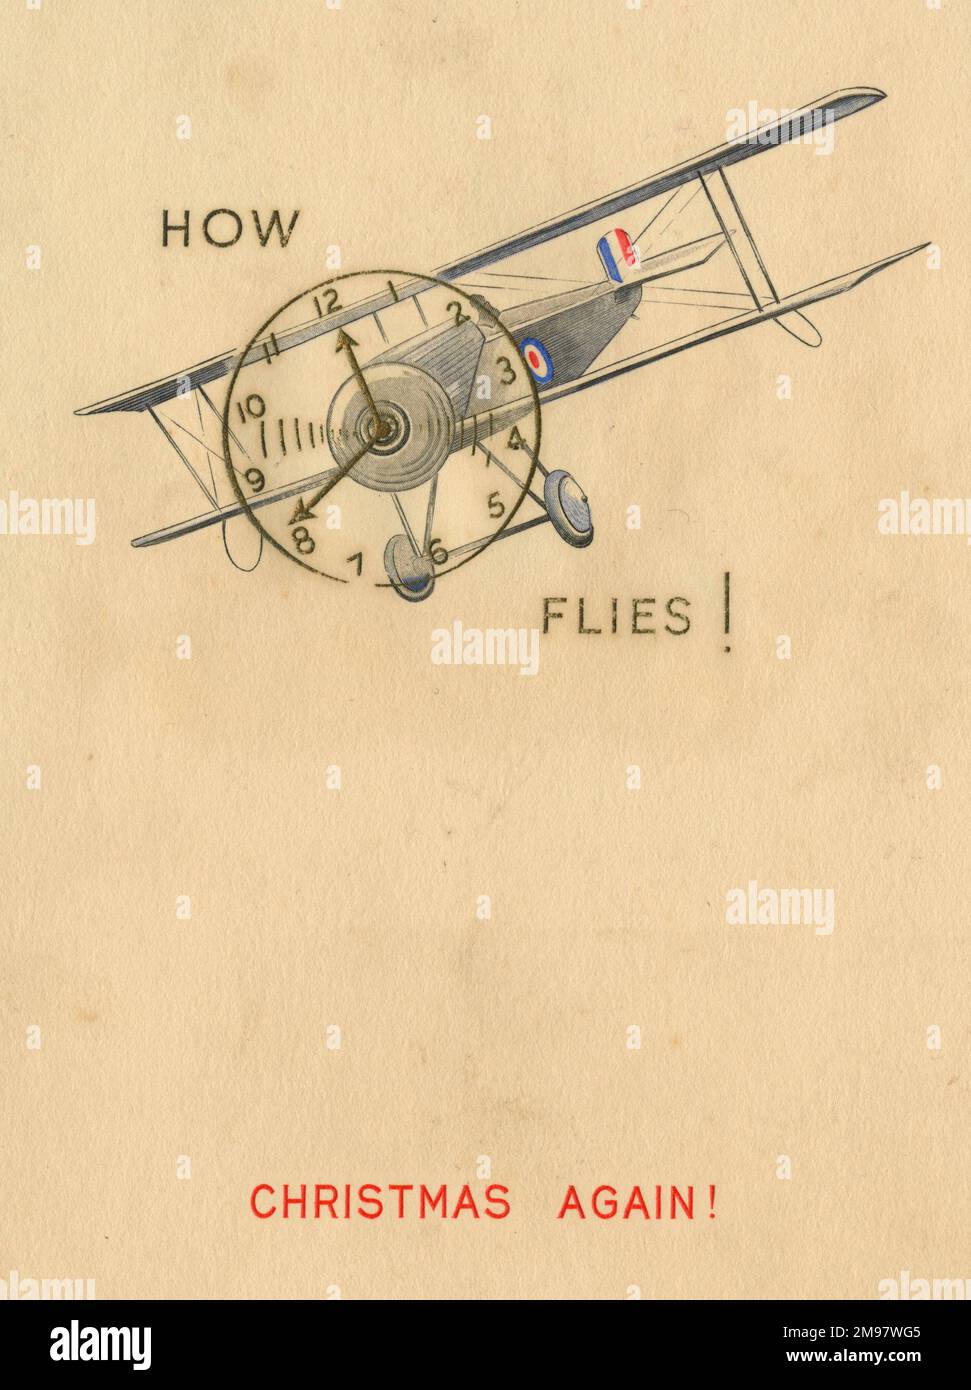 Weihnachtskarte - Zweiflugzeug aus dem Ersten Weltkrieg - wie die Zeit vergeht. Stockfoto